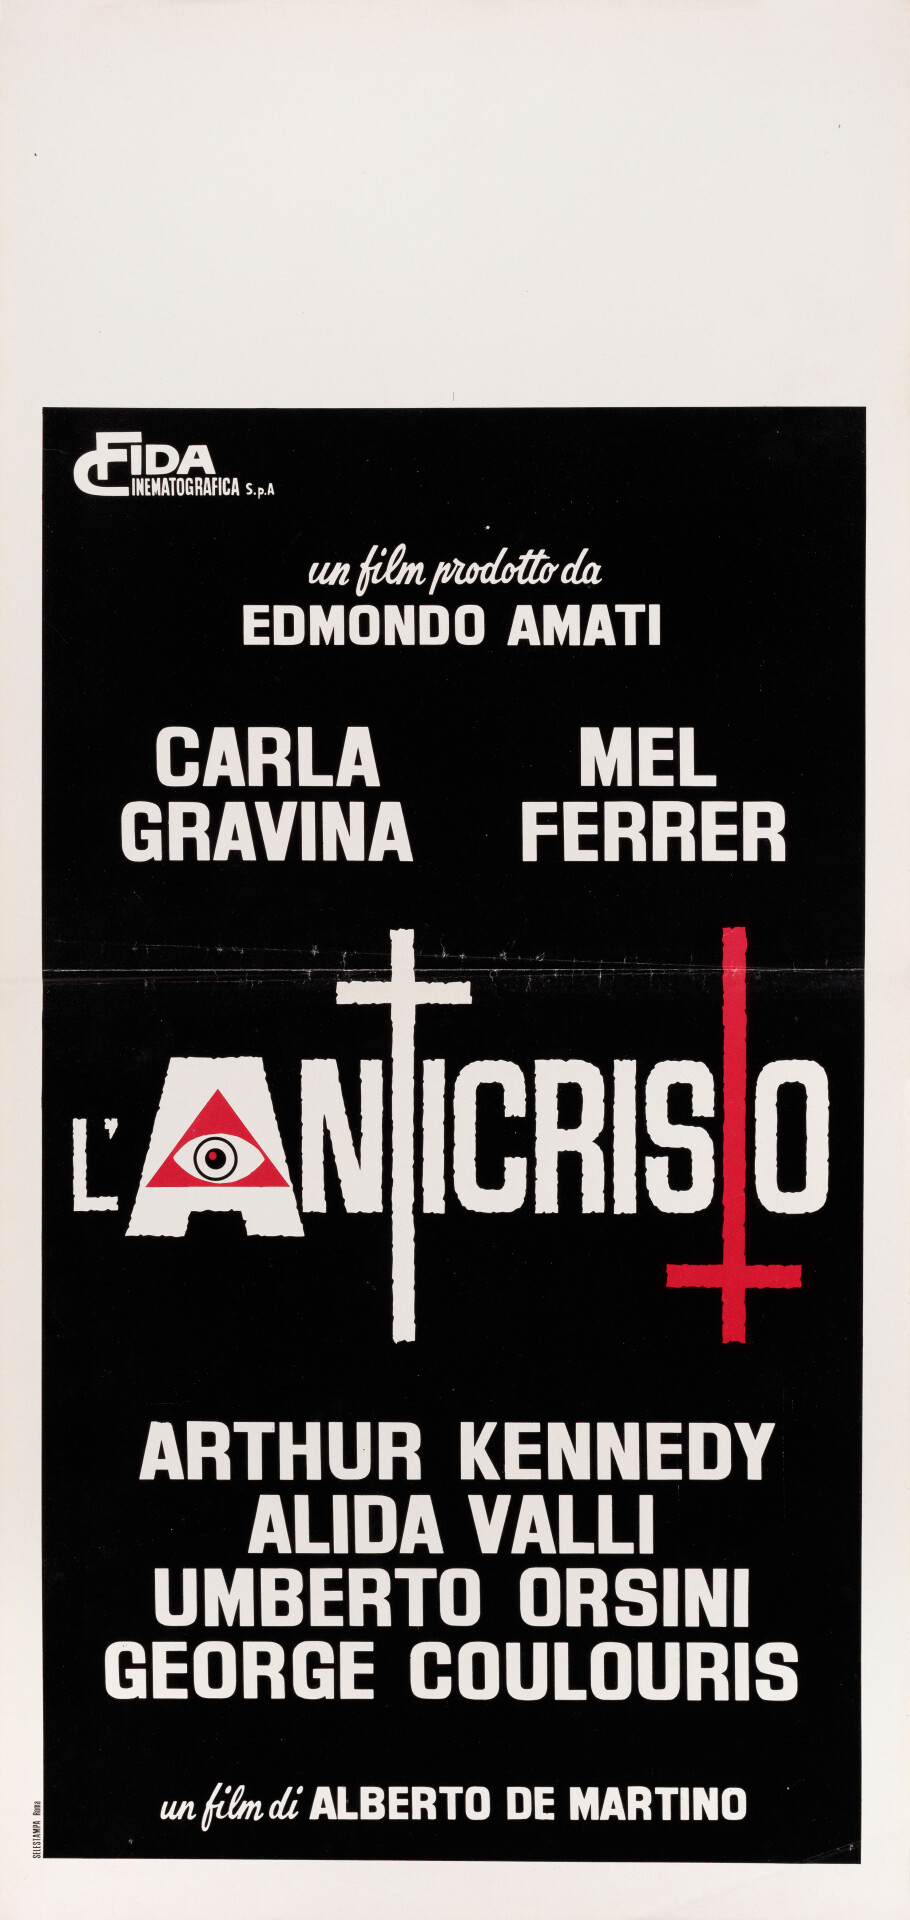 Антихрист (The Antichrist, 1974), режиссёр Альберто Де Мартино, итальянский постер к фильму (ужасы, 1974 год)